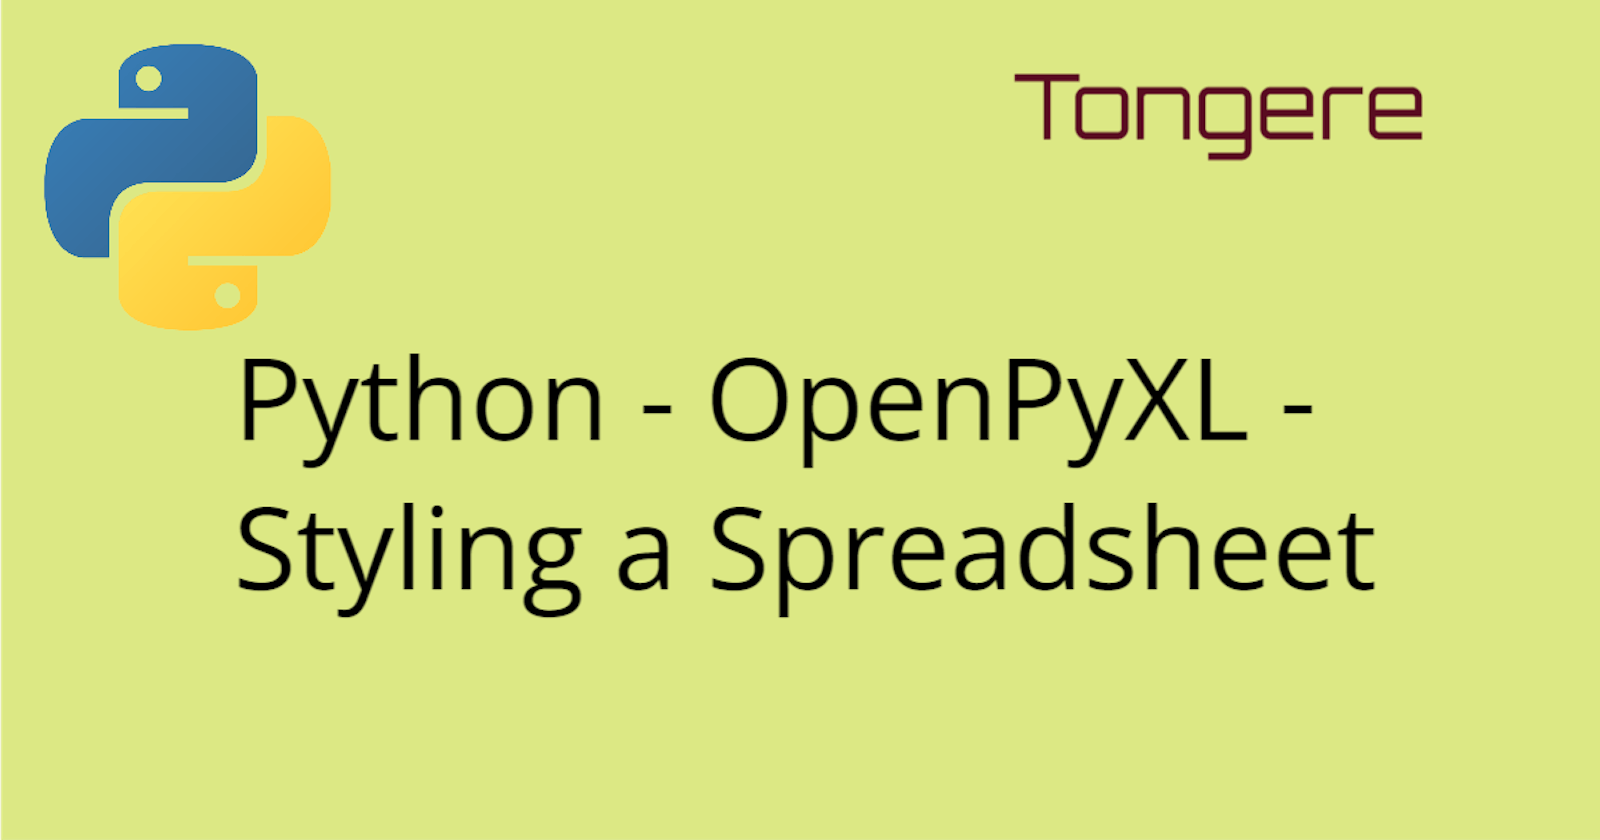 Python - OpenPyXL - Styling a Spreadsheet